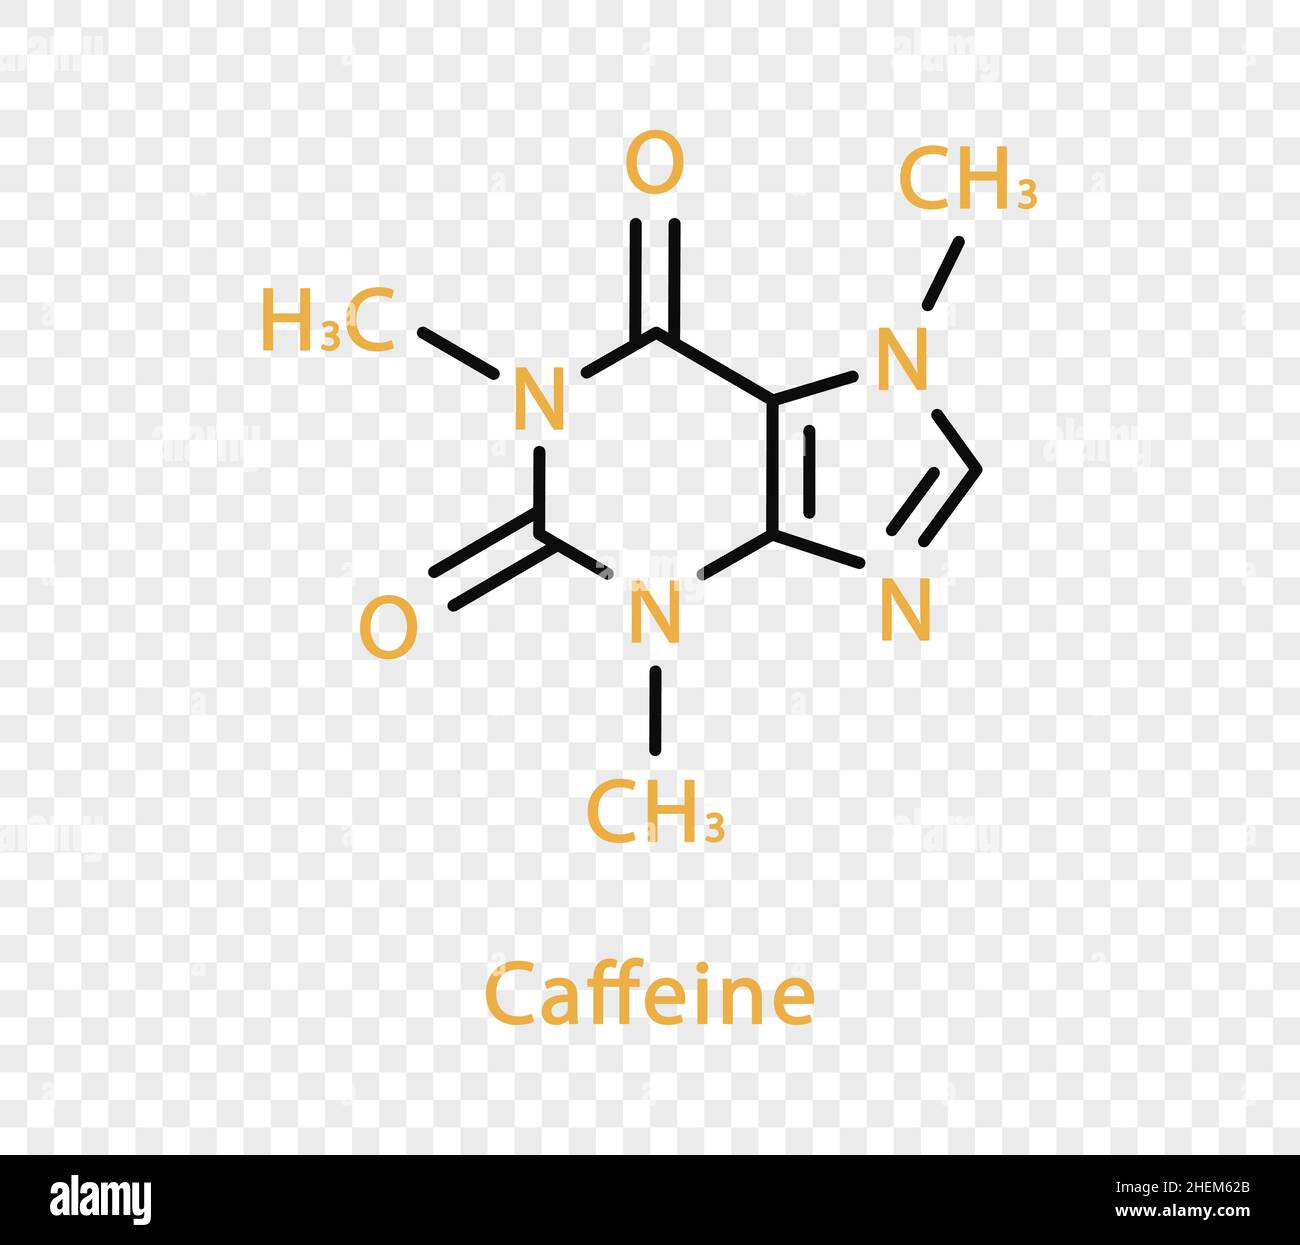 Formule chimique de caféine.Formule chimique structurale de caféine isolée sur fond transparent. Illustration de Vecteur